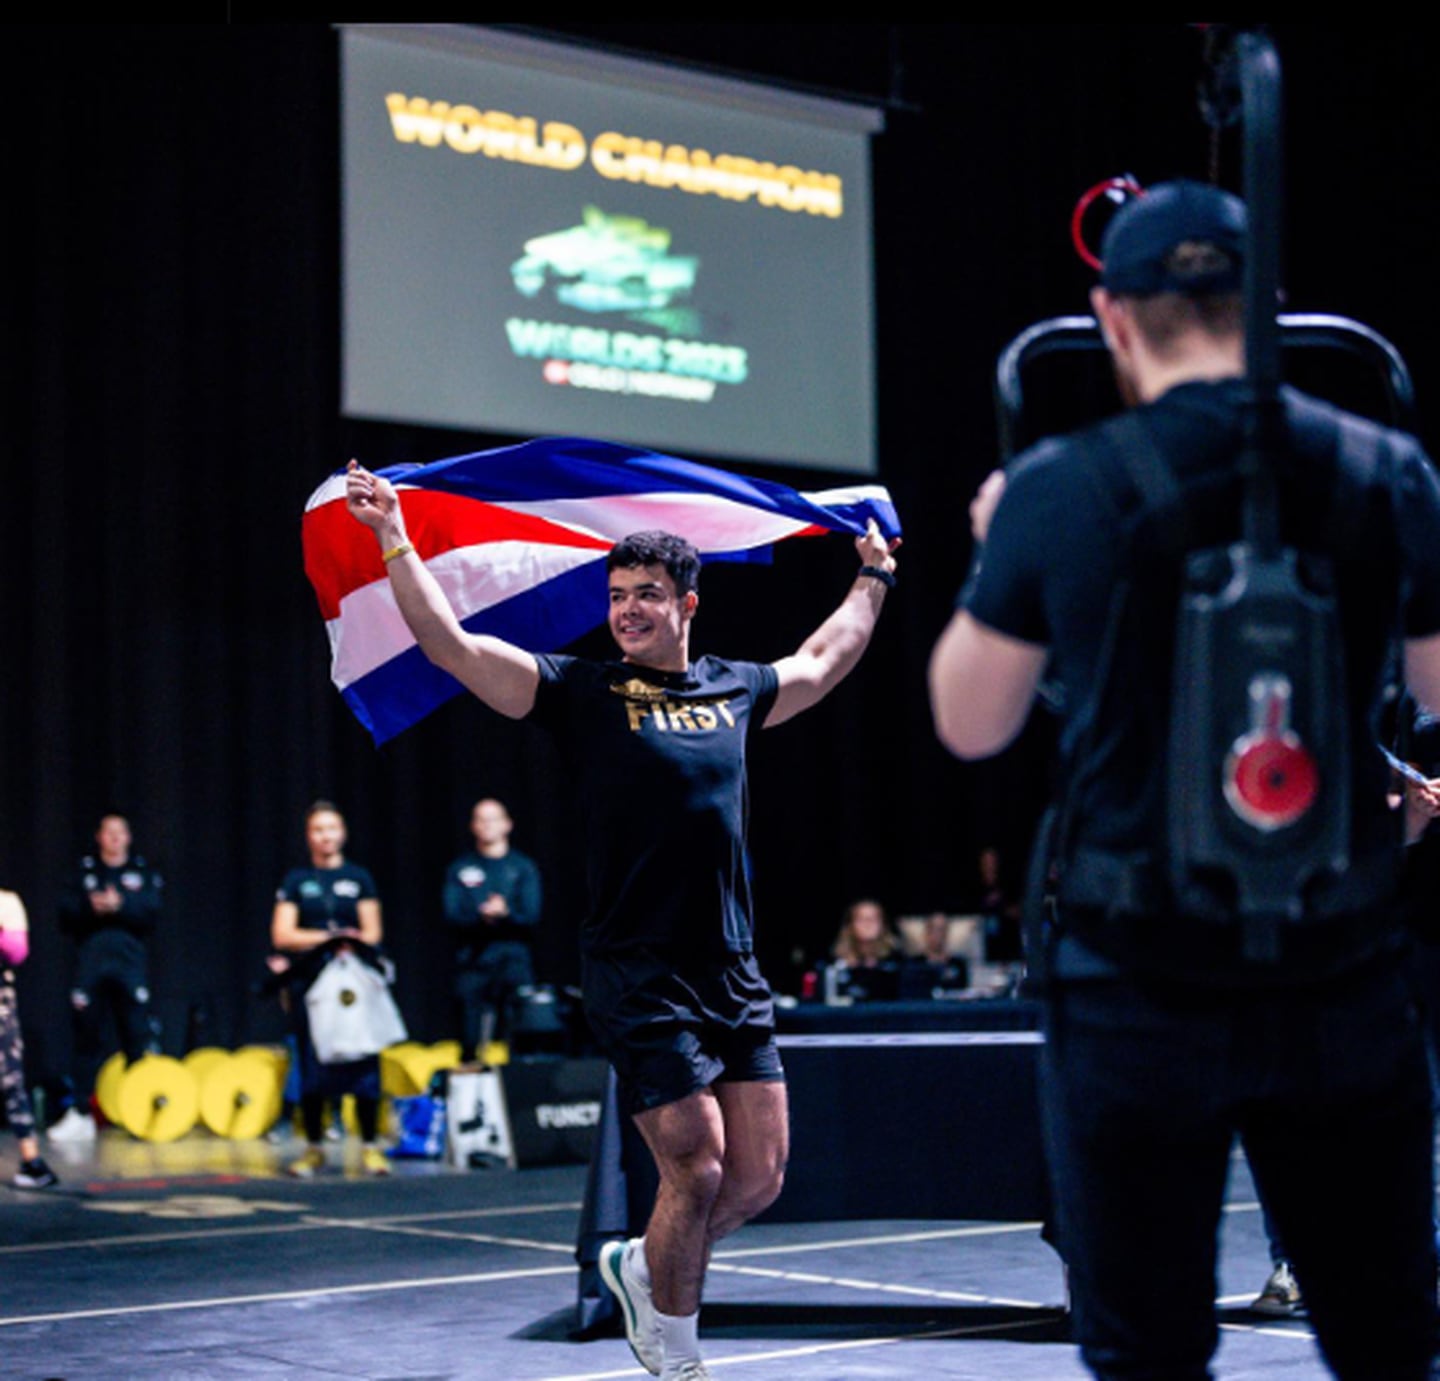 Leonardo Vindas Camacho 
Campeón Mundial Sub 20
functional fitness
Oslo, Noruega
30 de noviembre
Tomada de Instagram